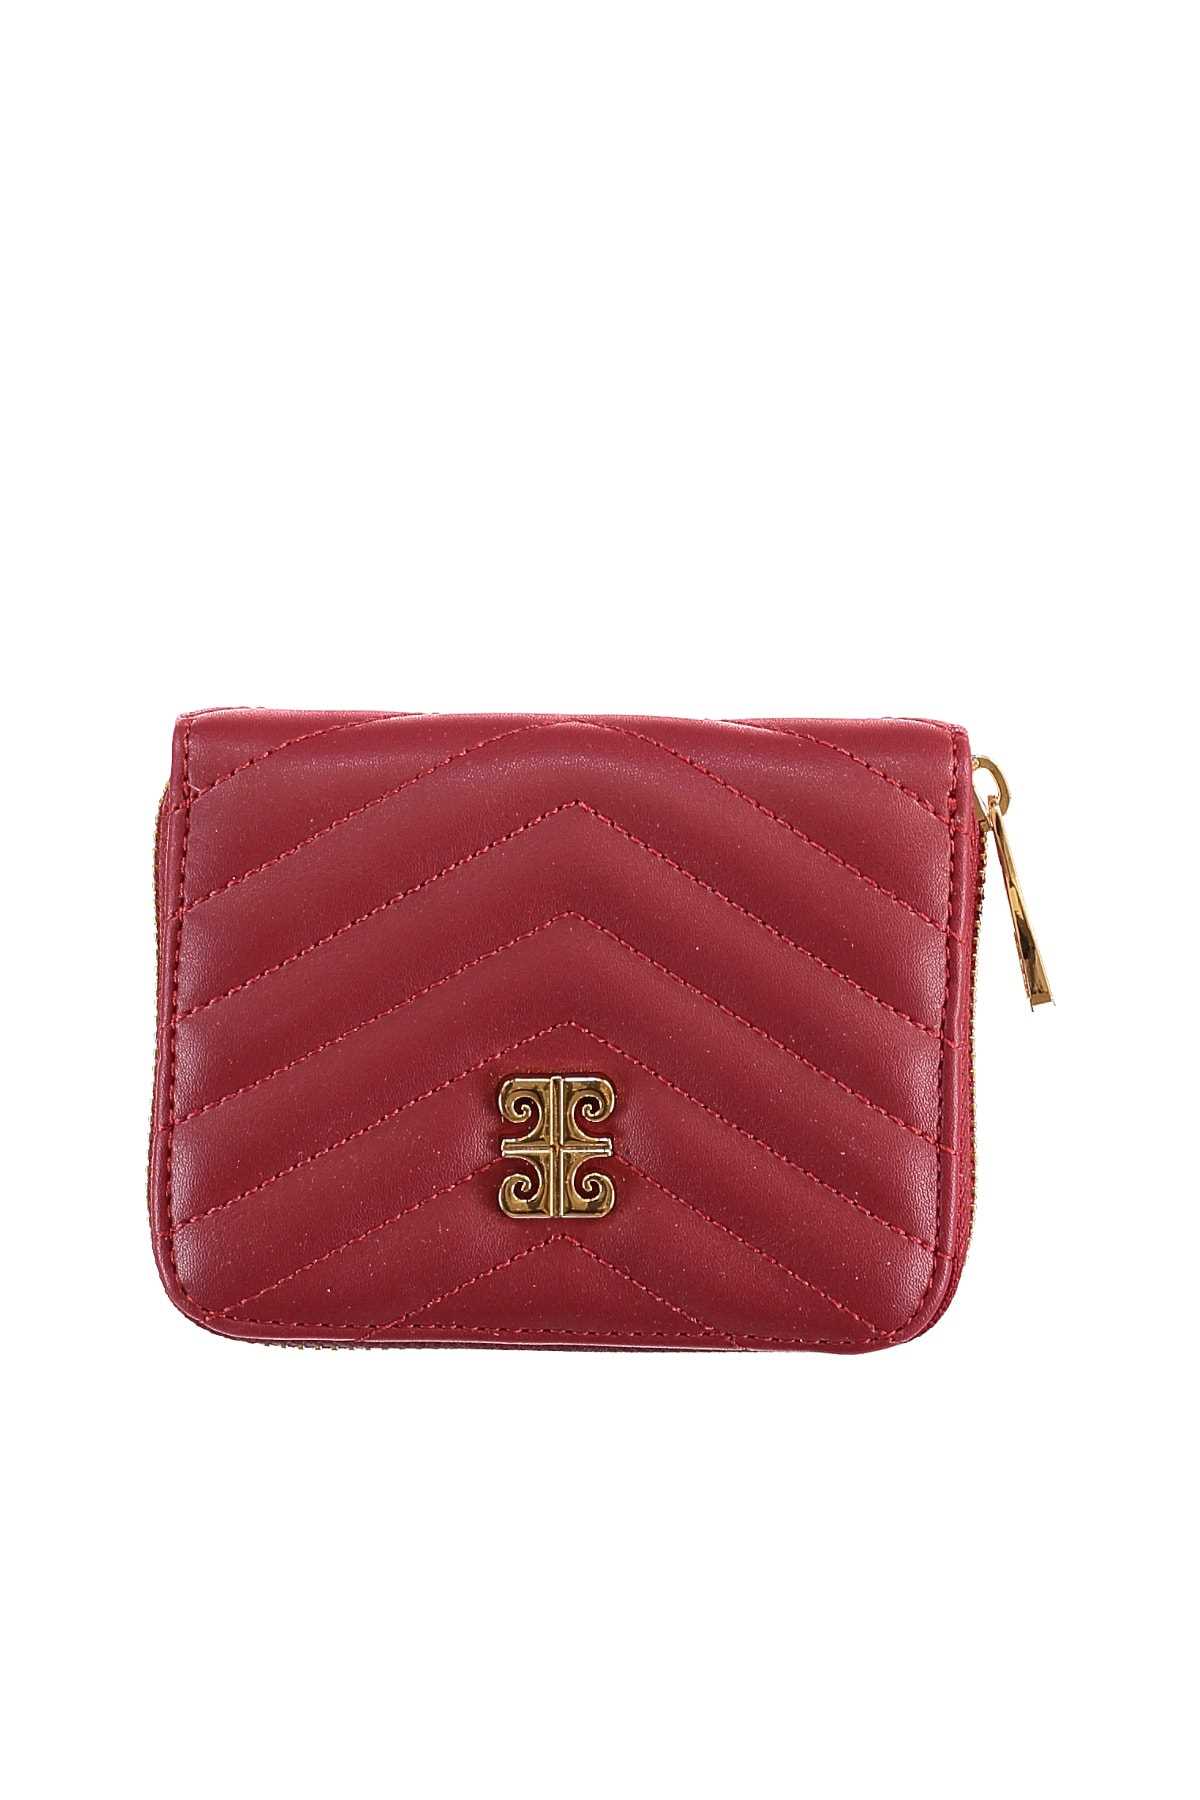 فروش پستی کیف پول زنانه برند پیرکاردن رنگ قرمز ty101781119